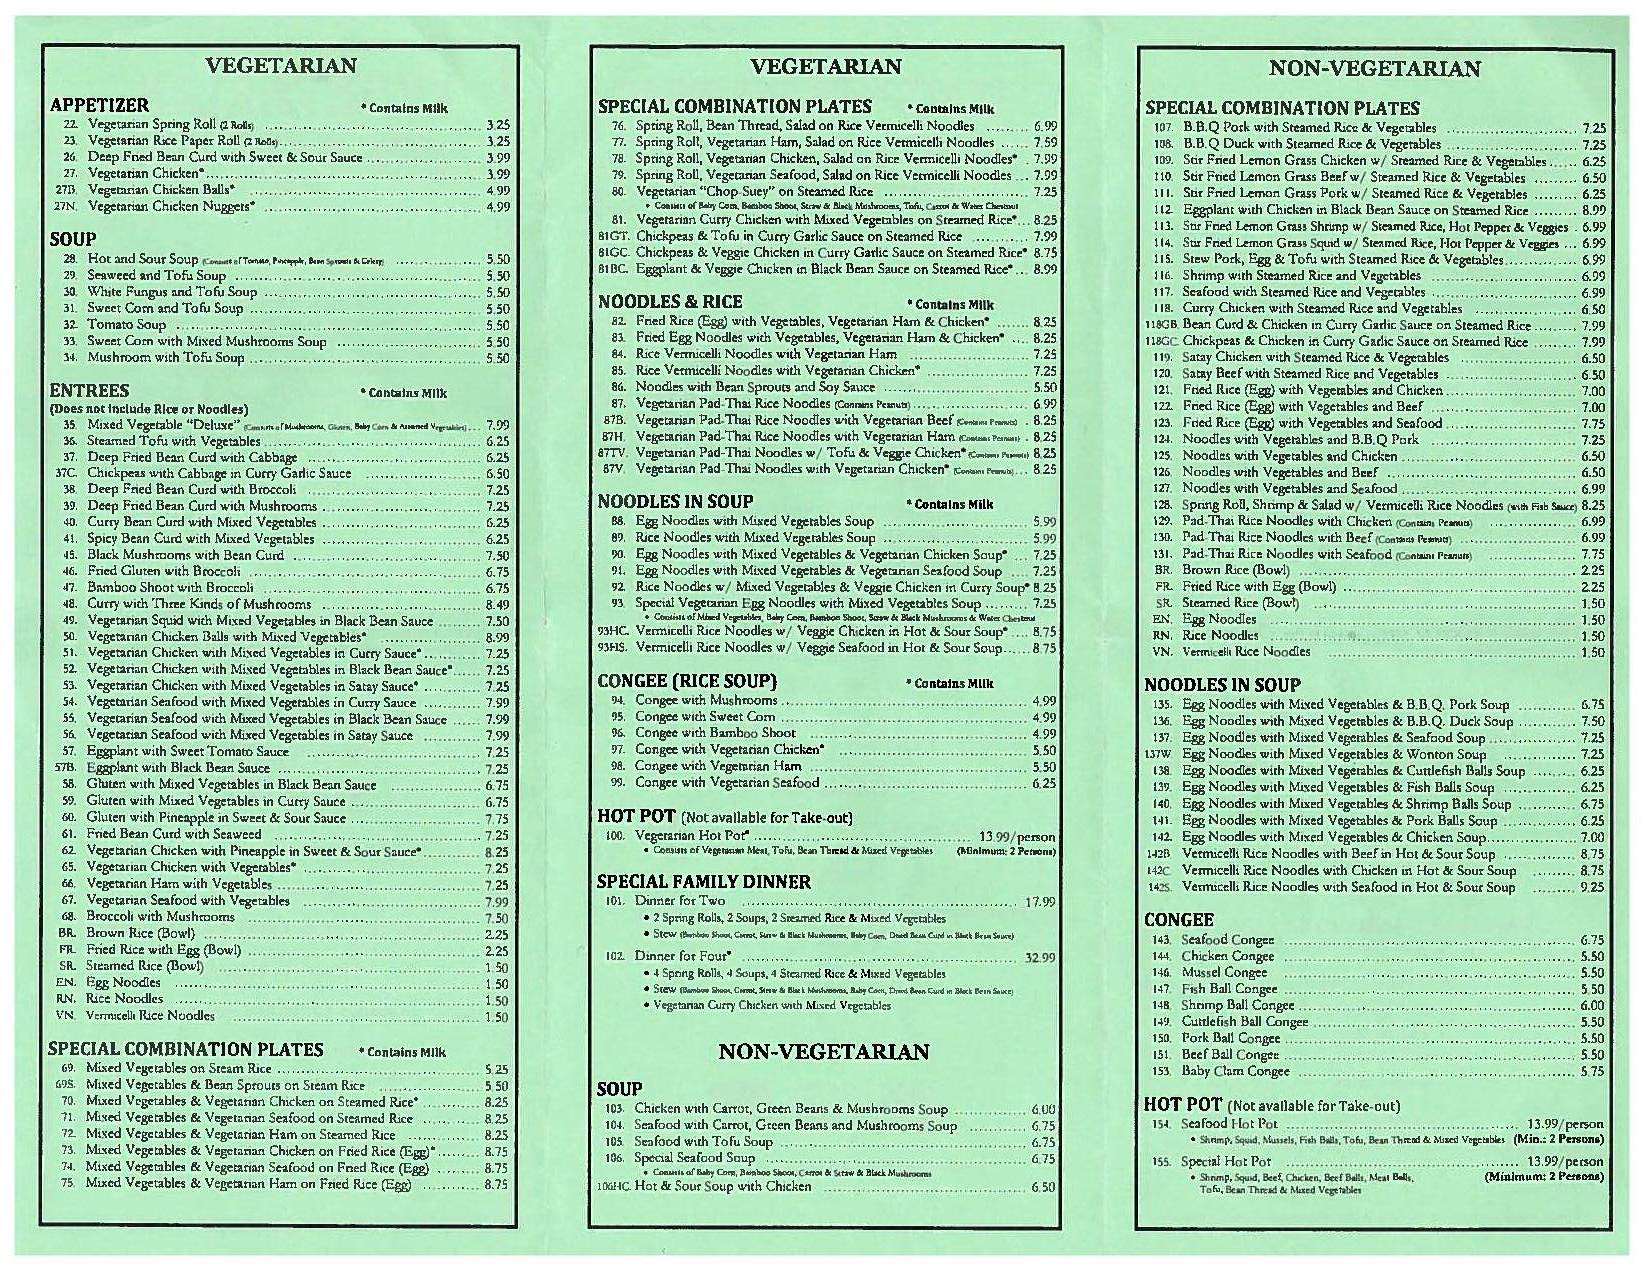 restaurant menu items list